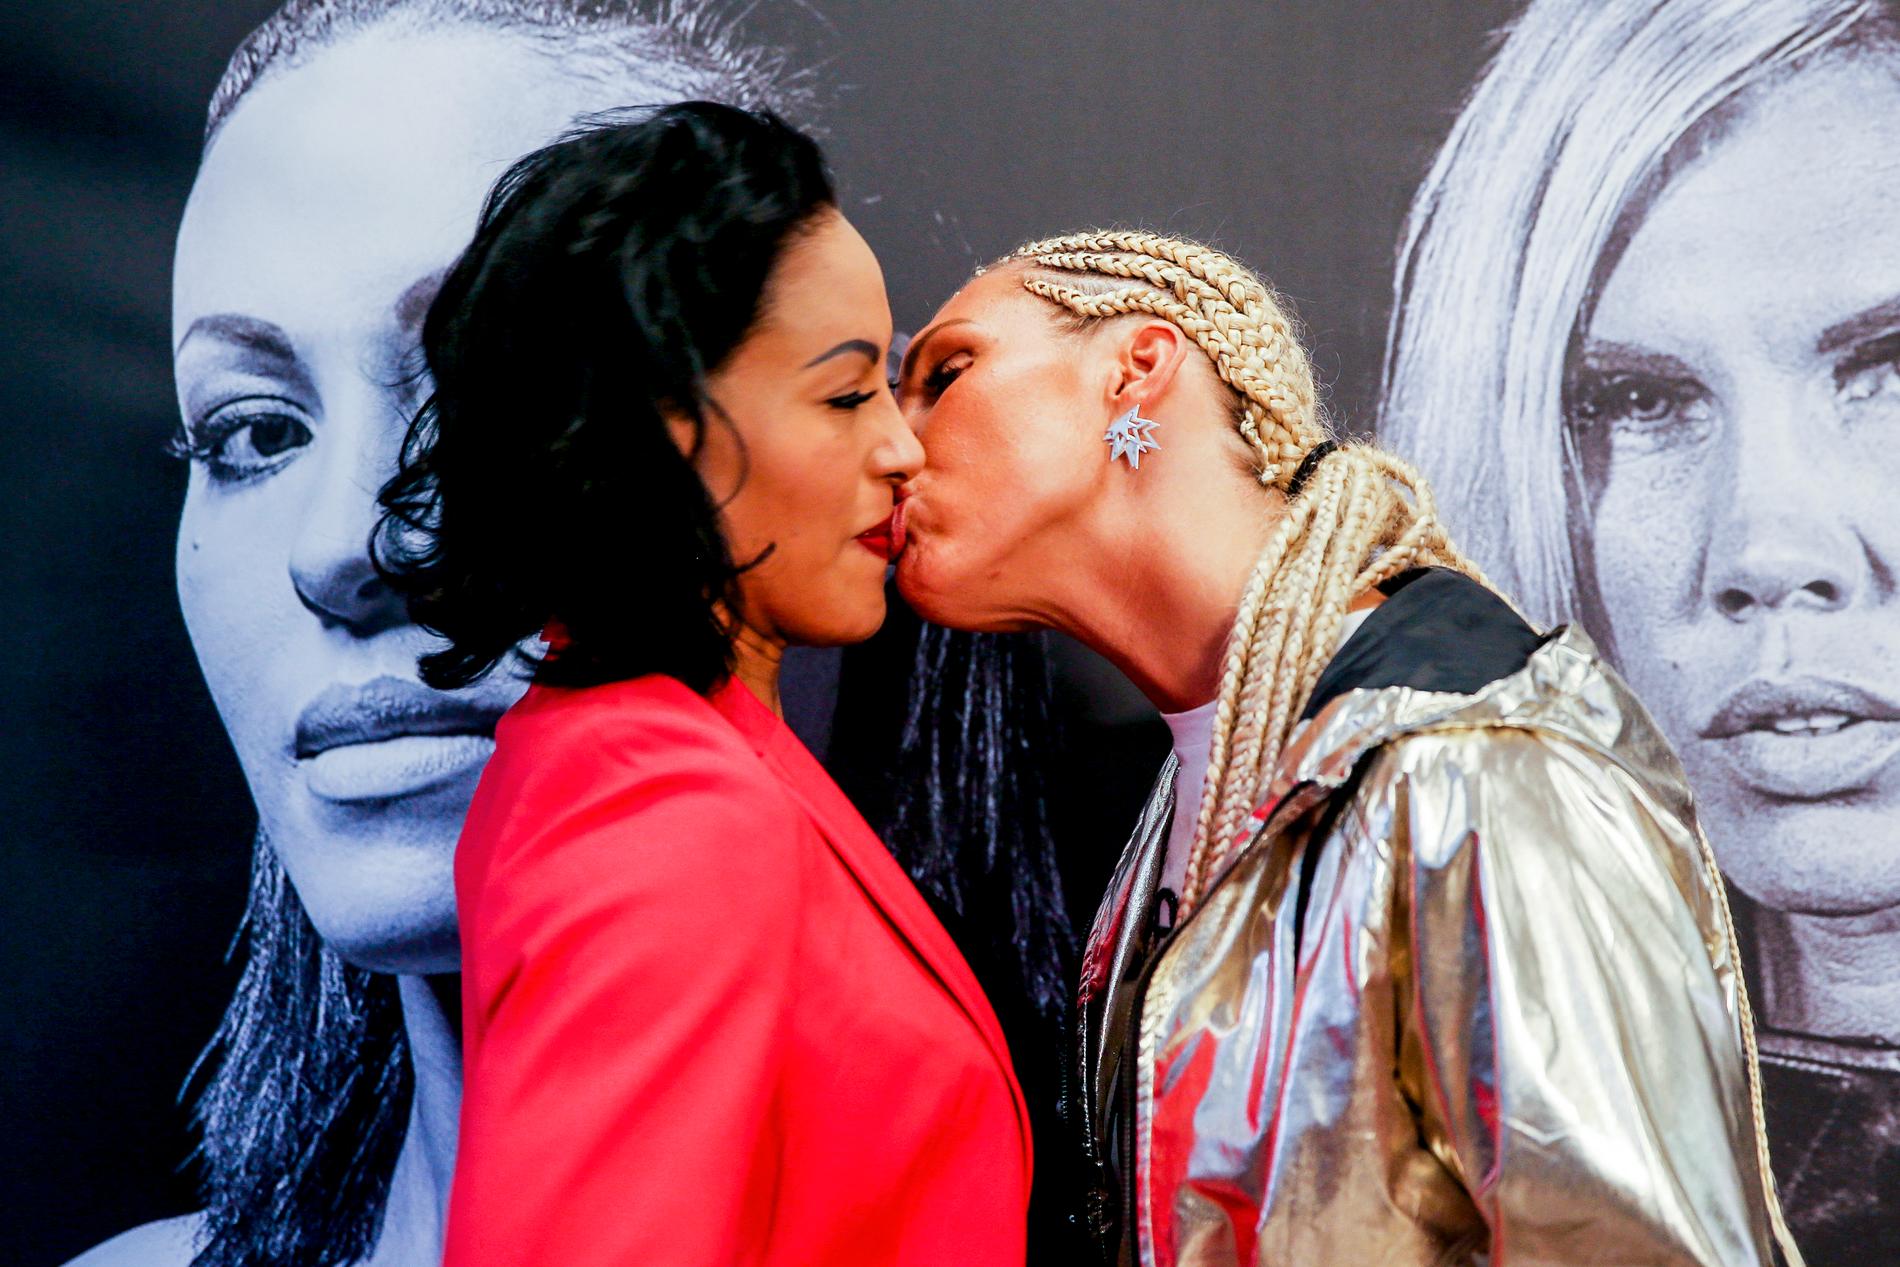 Den svenska boxaren Mikaela Lauréns kysste oväntat sin rival Cecilia Brækhus på en presskonferens inför helgens titelmatch i Norge.